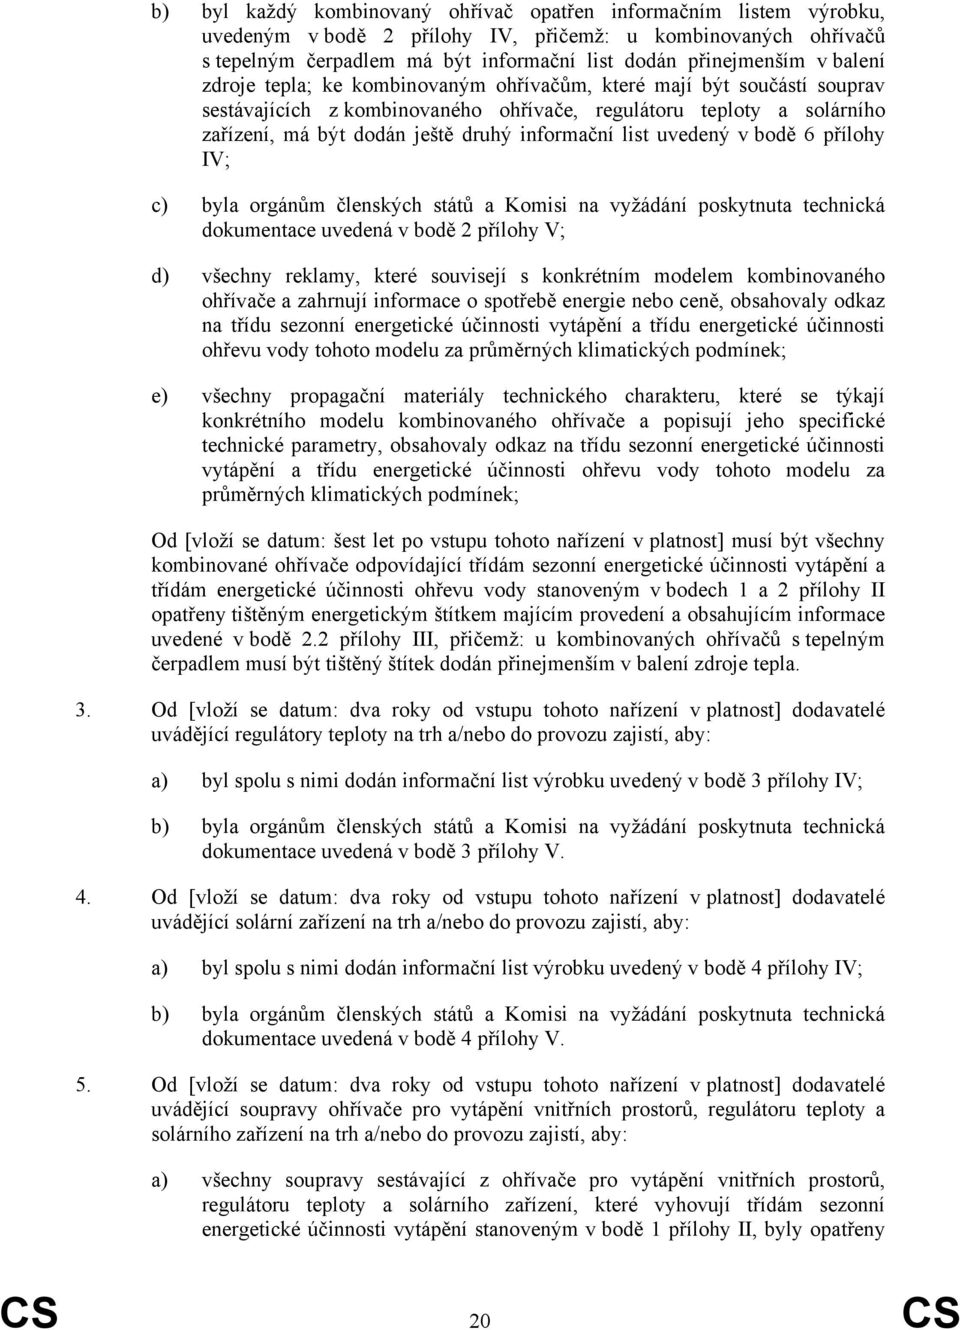 list uvedený v bodě 6 přílohy IV; c) byla orgánům členských států a Komisi na vyžádání poskytnuta technická dokumentace uvedená v bodě 2 přílohy V; d) všechny reklamy, které souvisejí s konkrétním